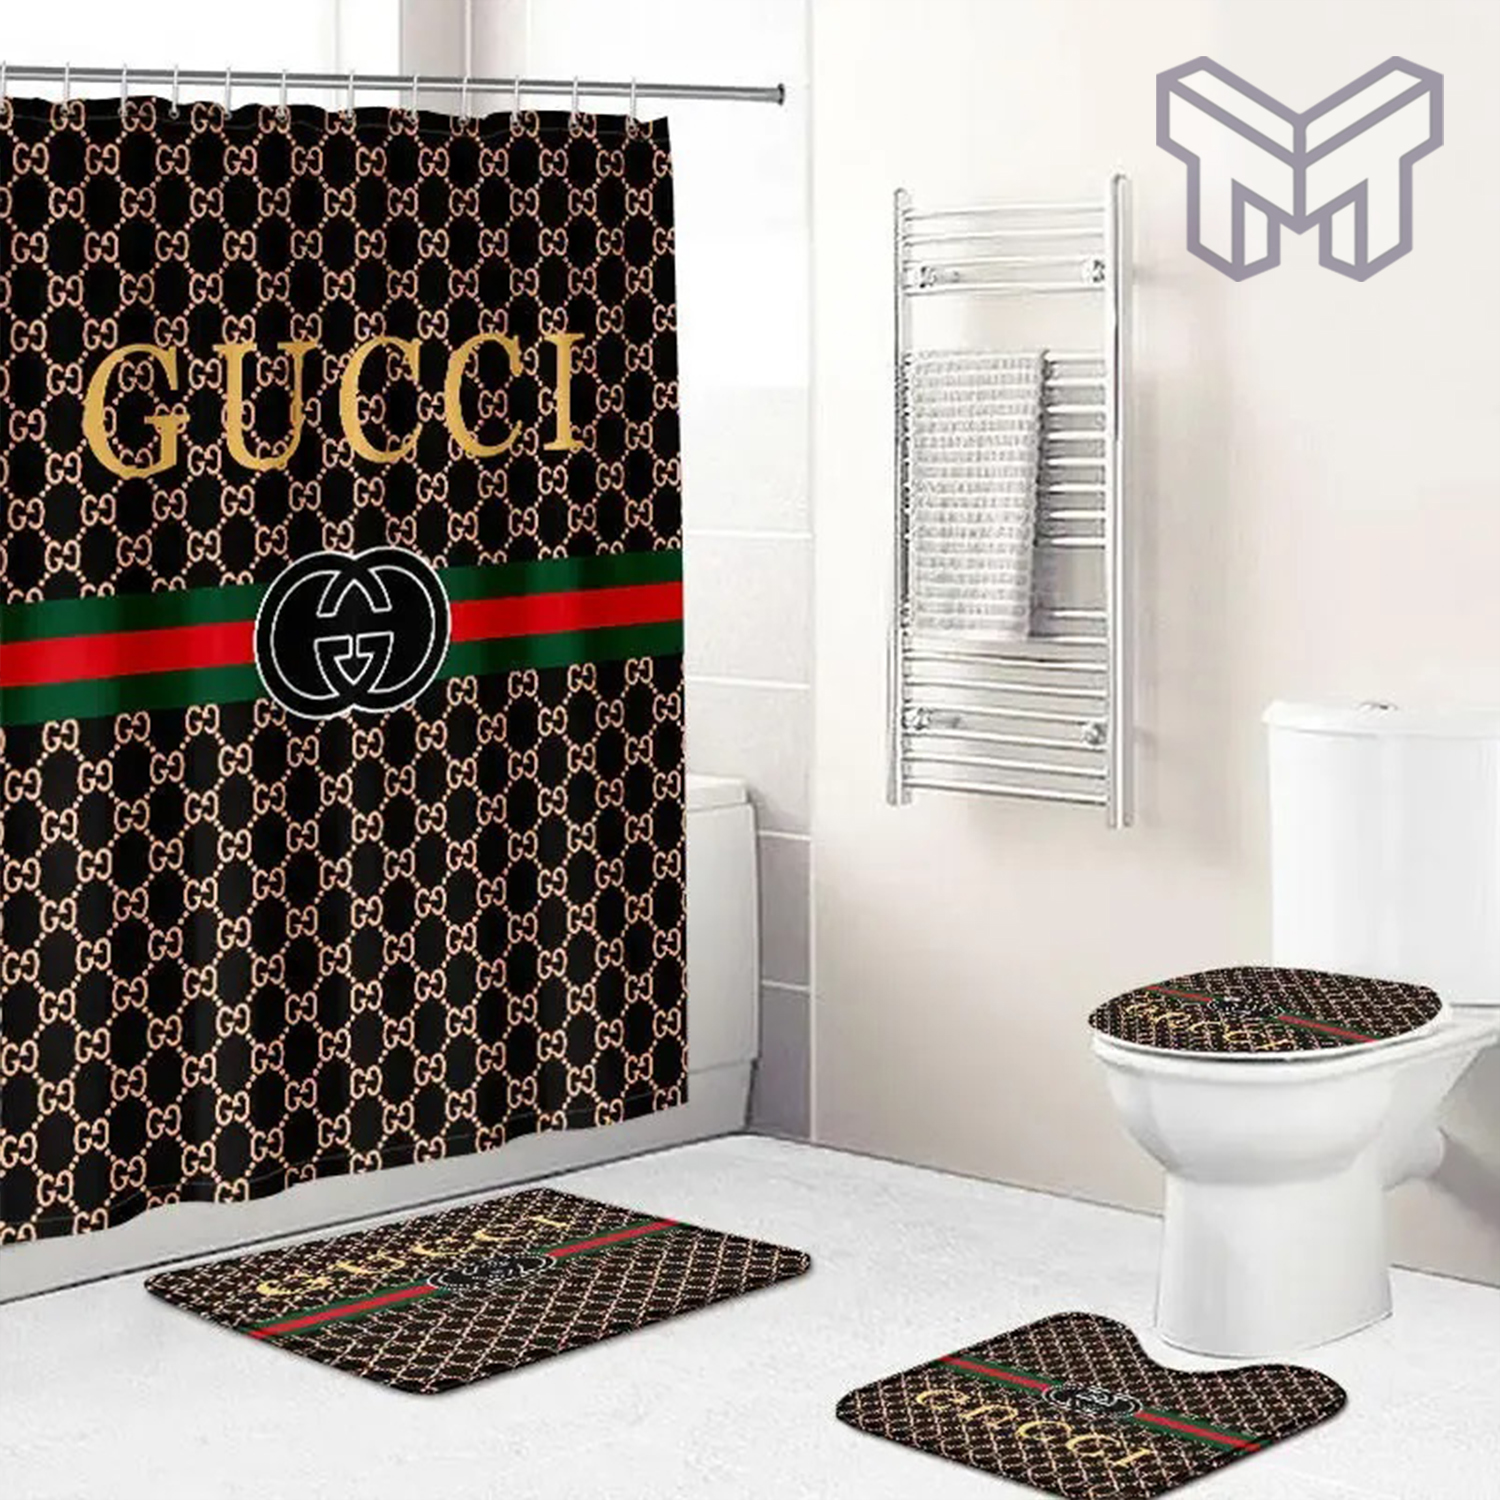 Bath, Custom Gucci Bathroom Set Made By Me